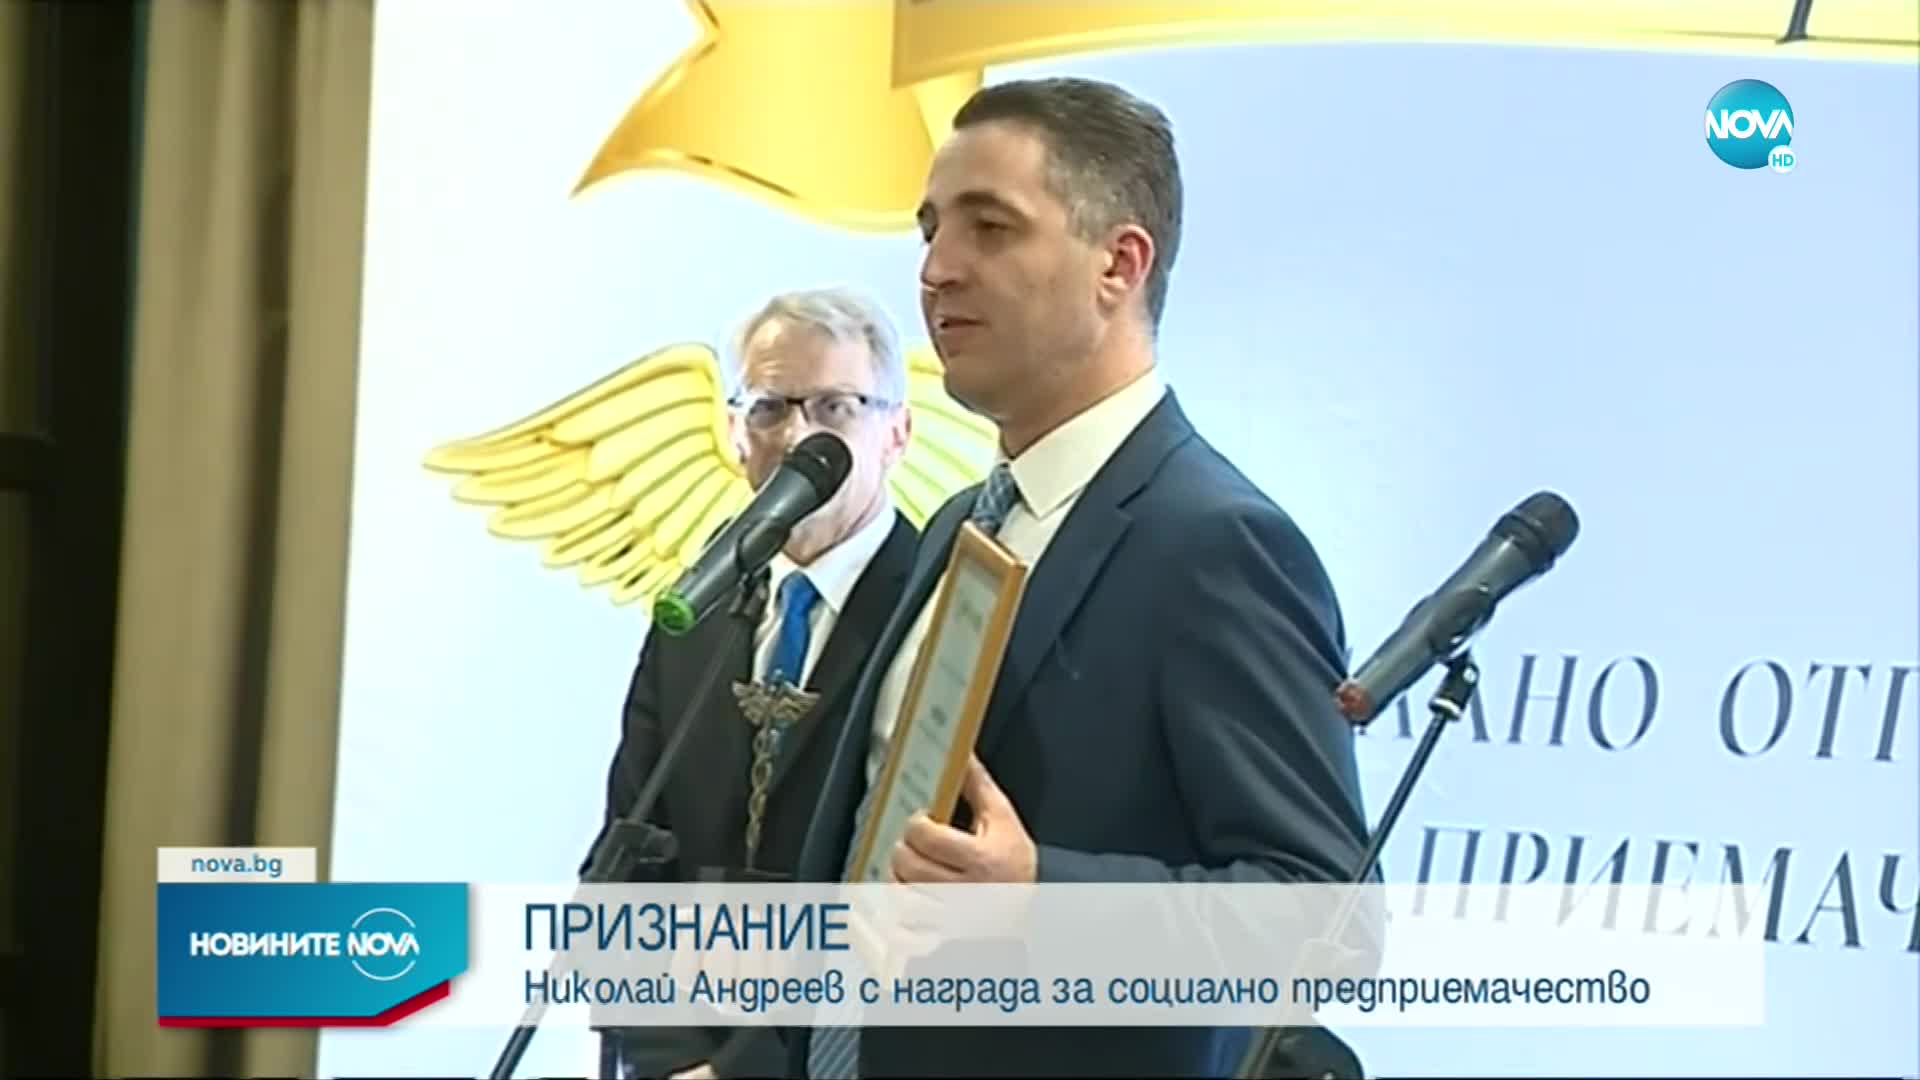 ПРИЗНАНИЕ: Николай Андреев с награда за социално предприемачество